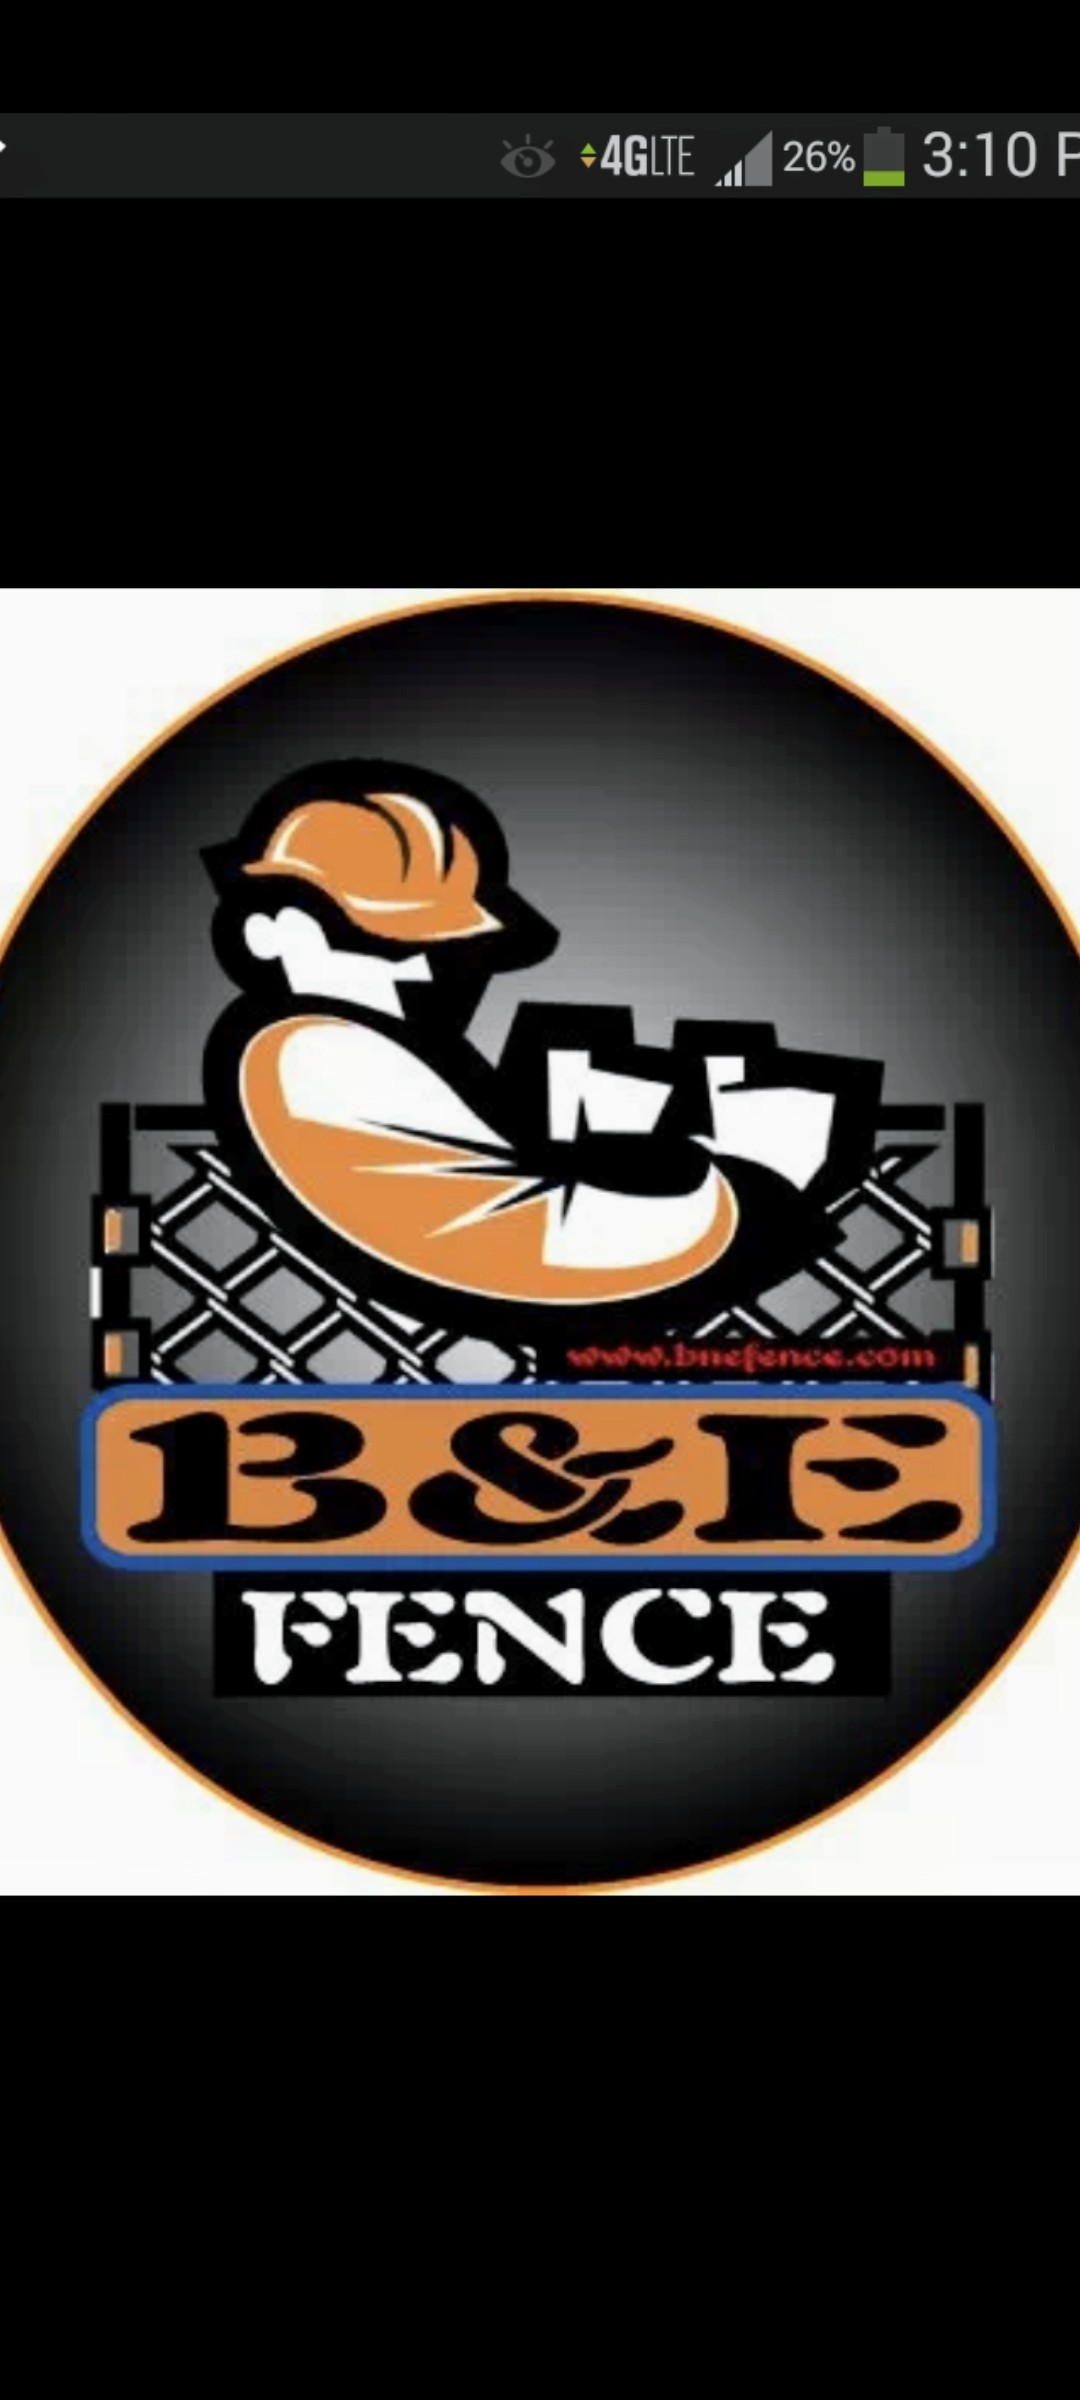 B & E Fence Logo